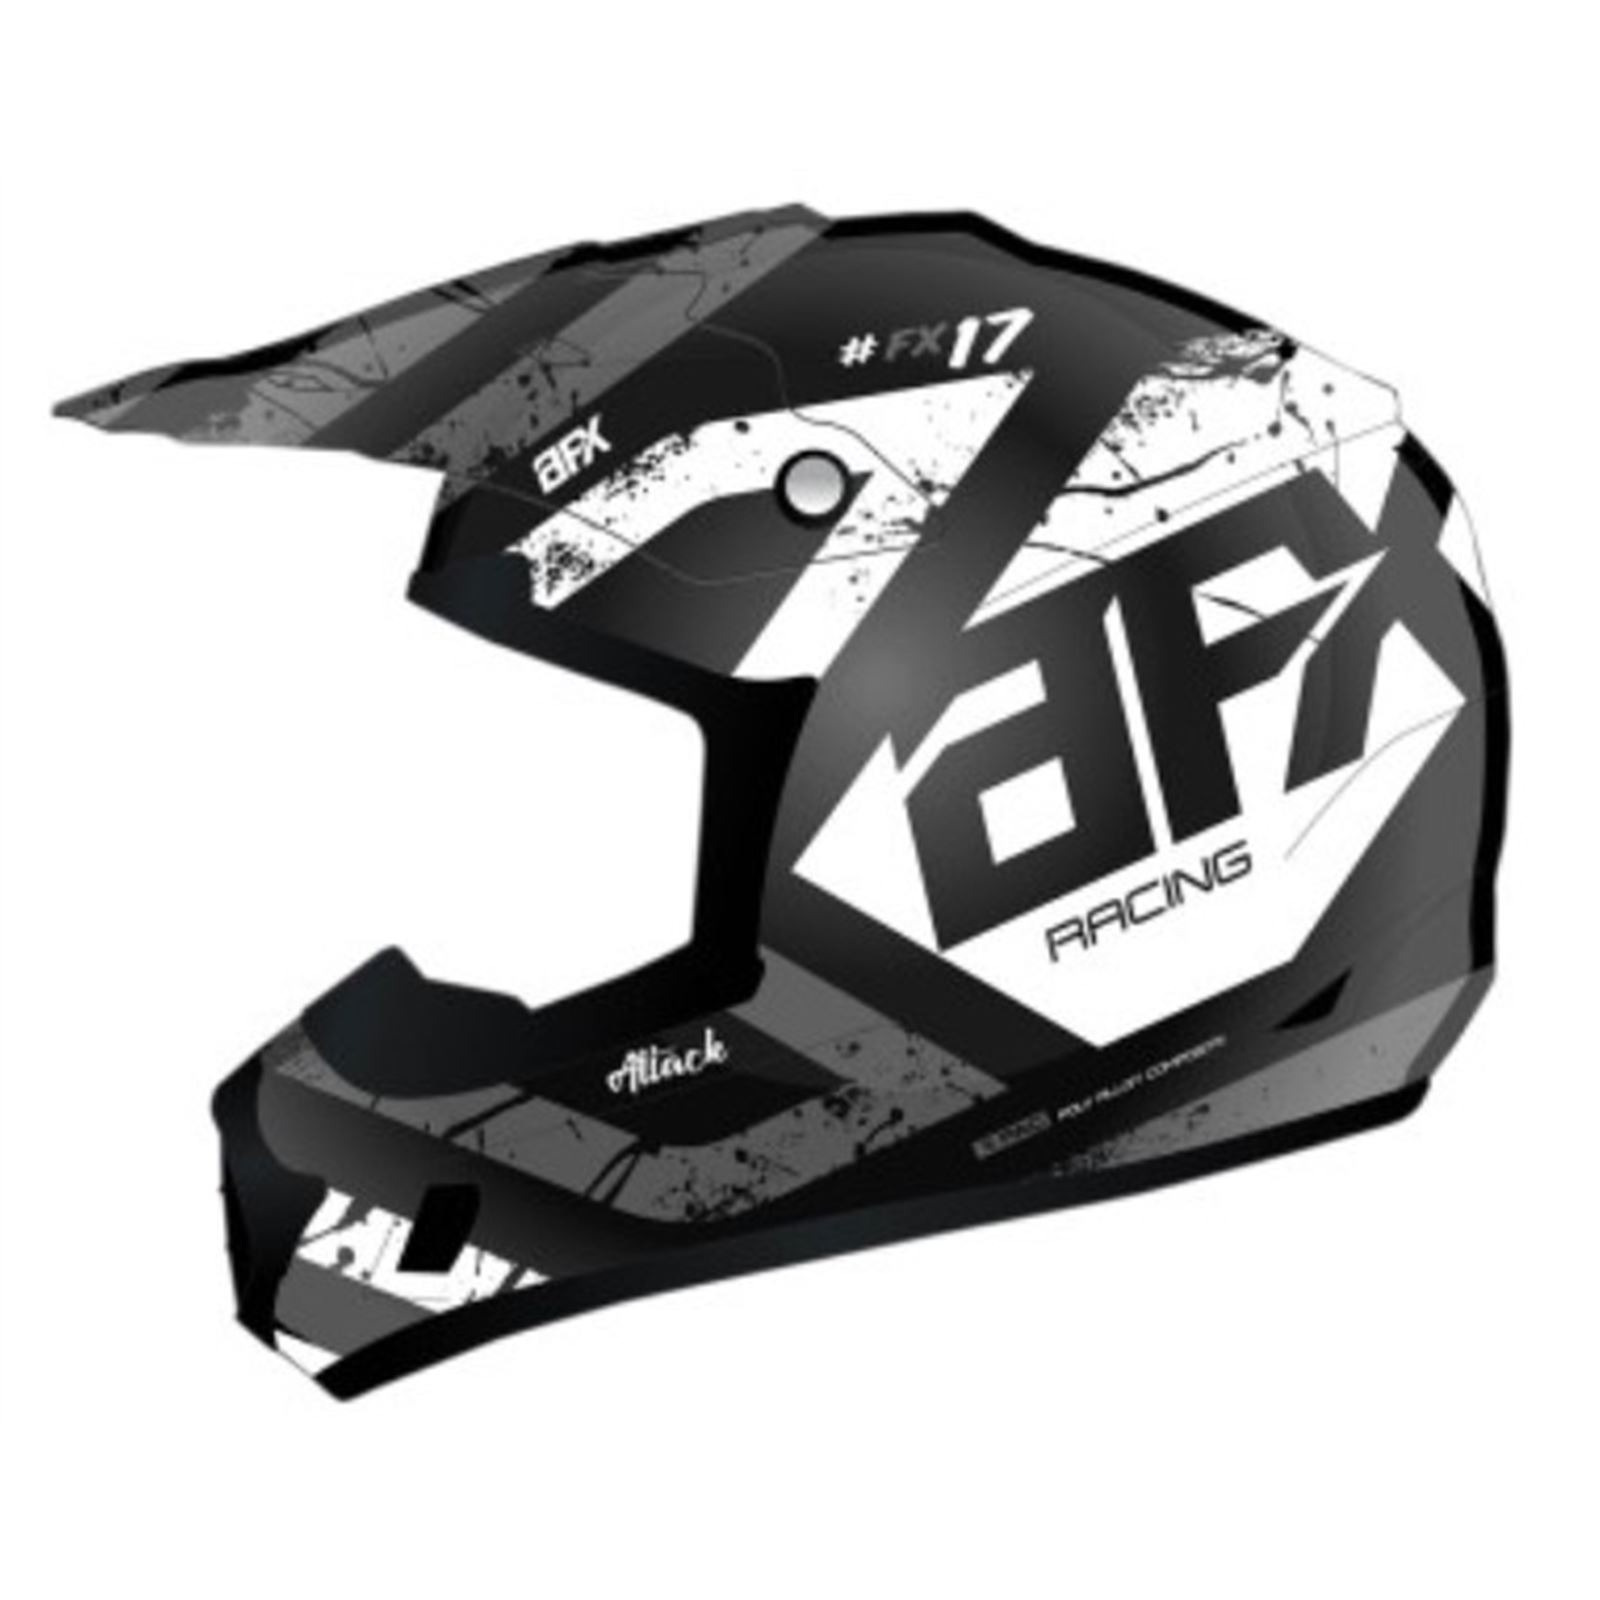 AFX FX-17 Helmet - Attack - Matte Black/Silver - Medium